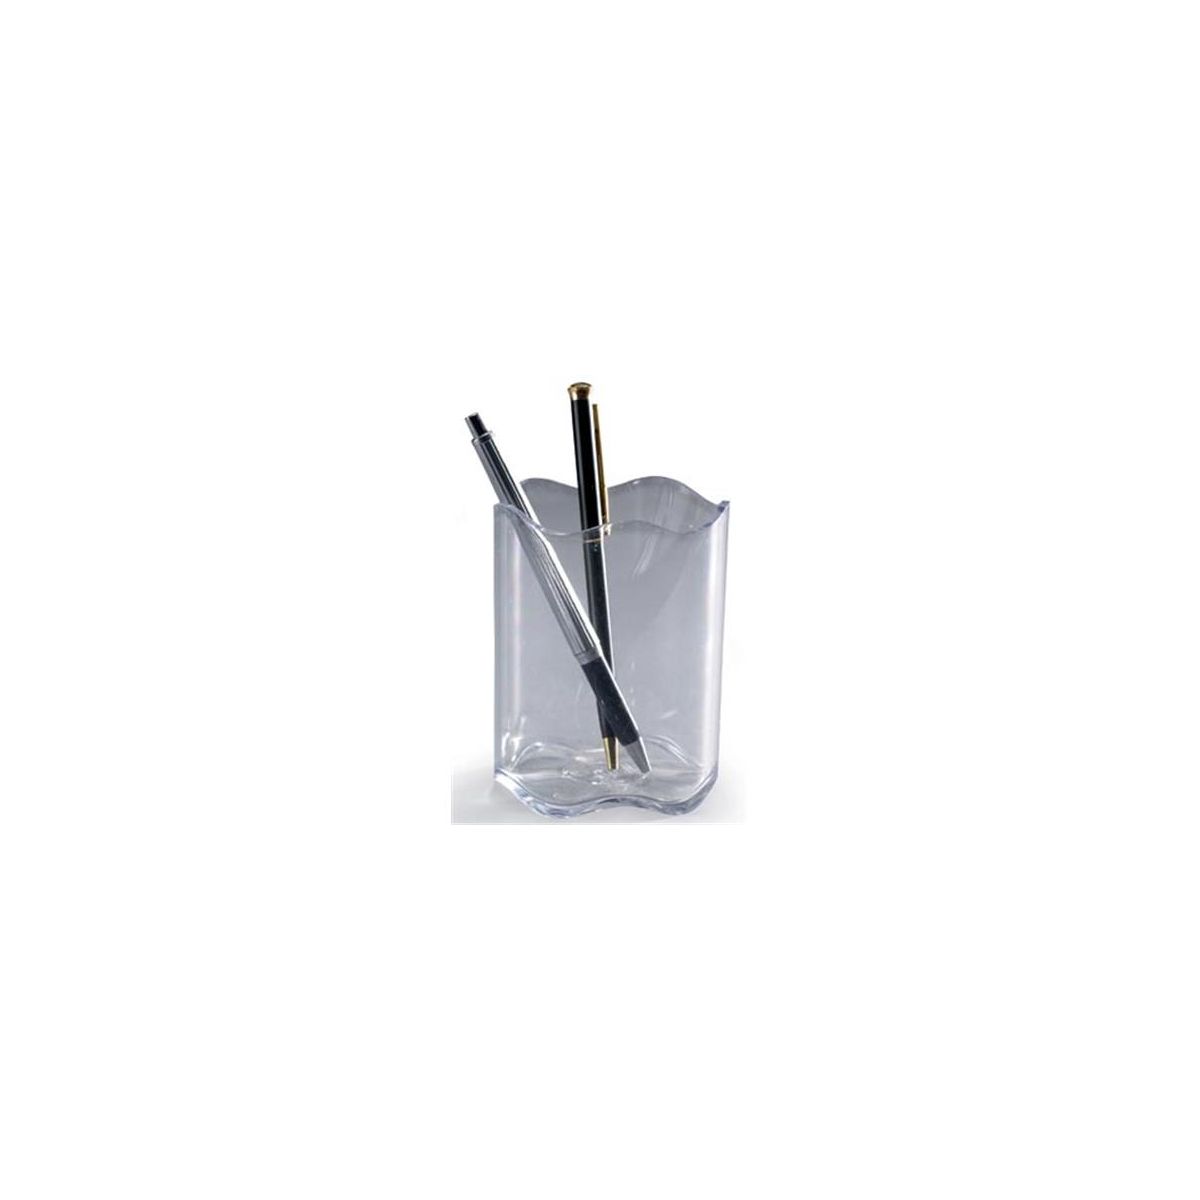 Pojemnik na długopisy Trend przezroczysty plastik Durable (1791235400)